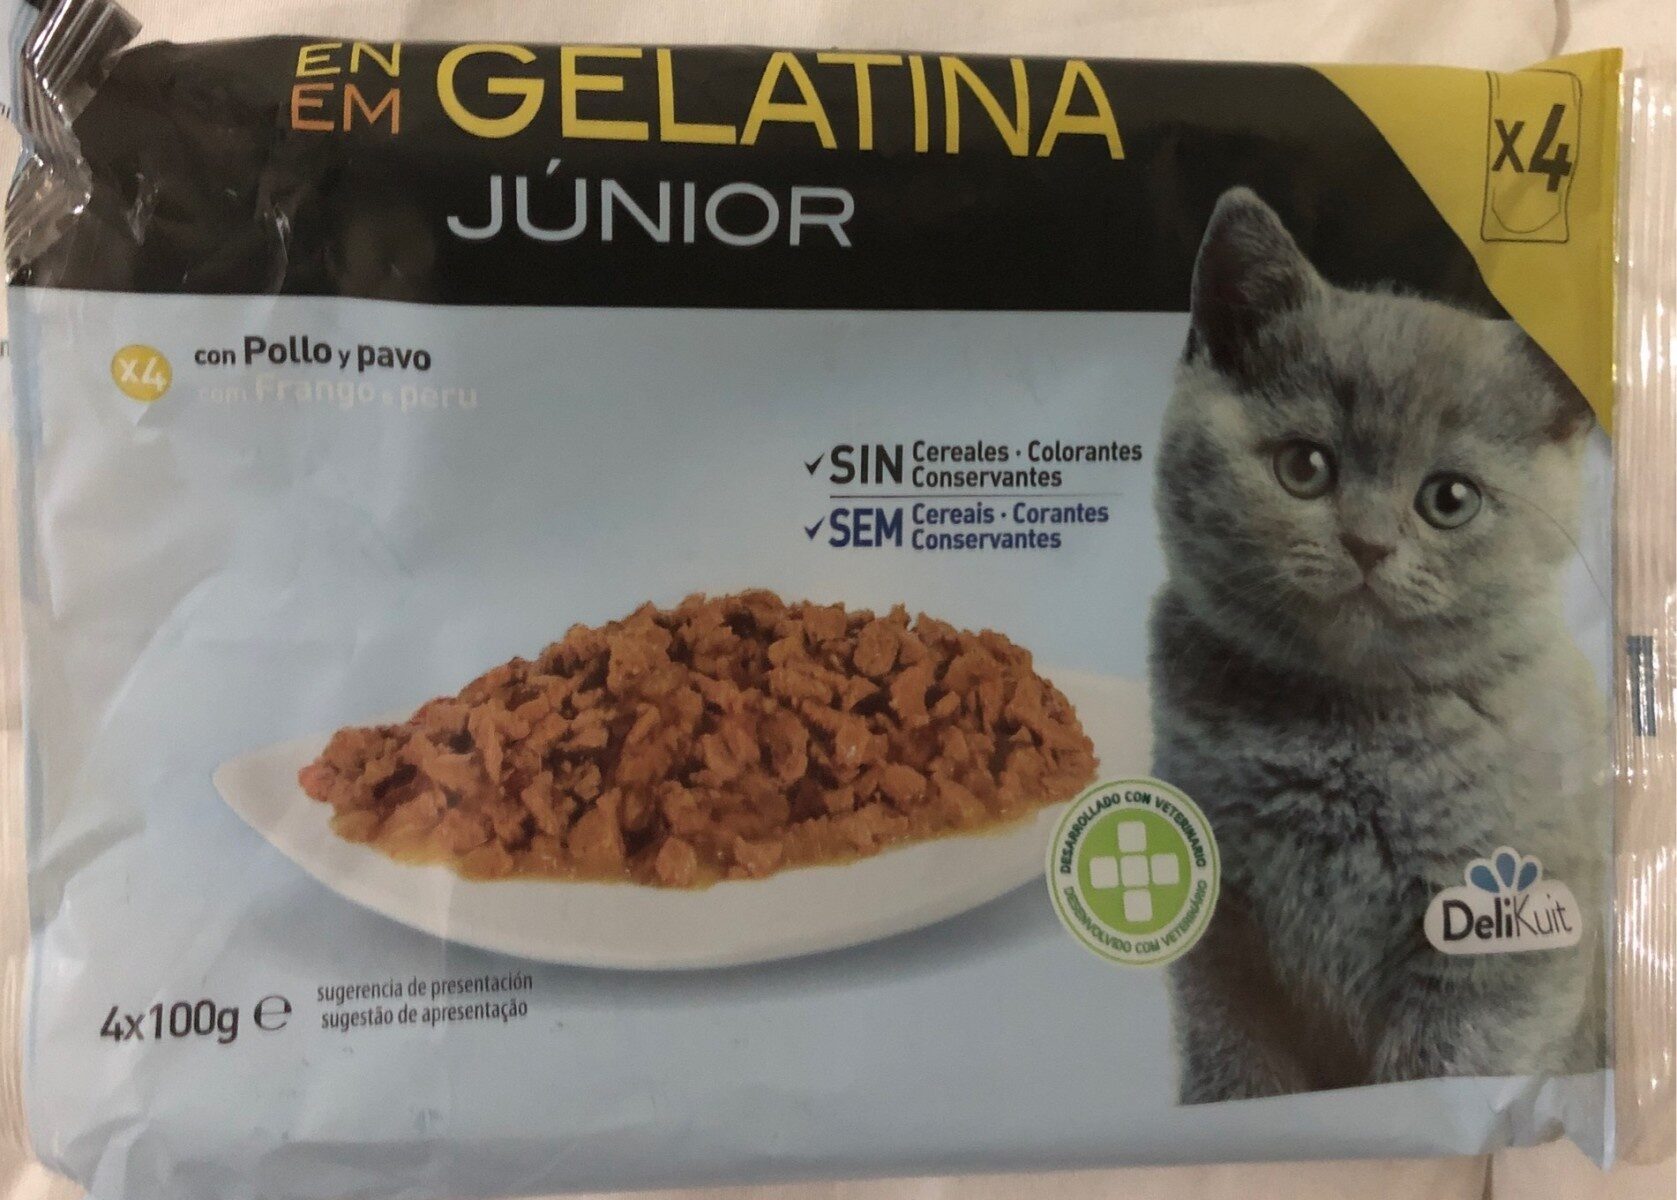 En gelatina junior - Product - es